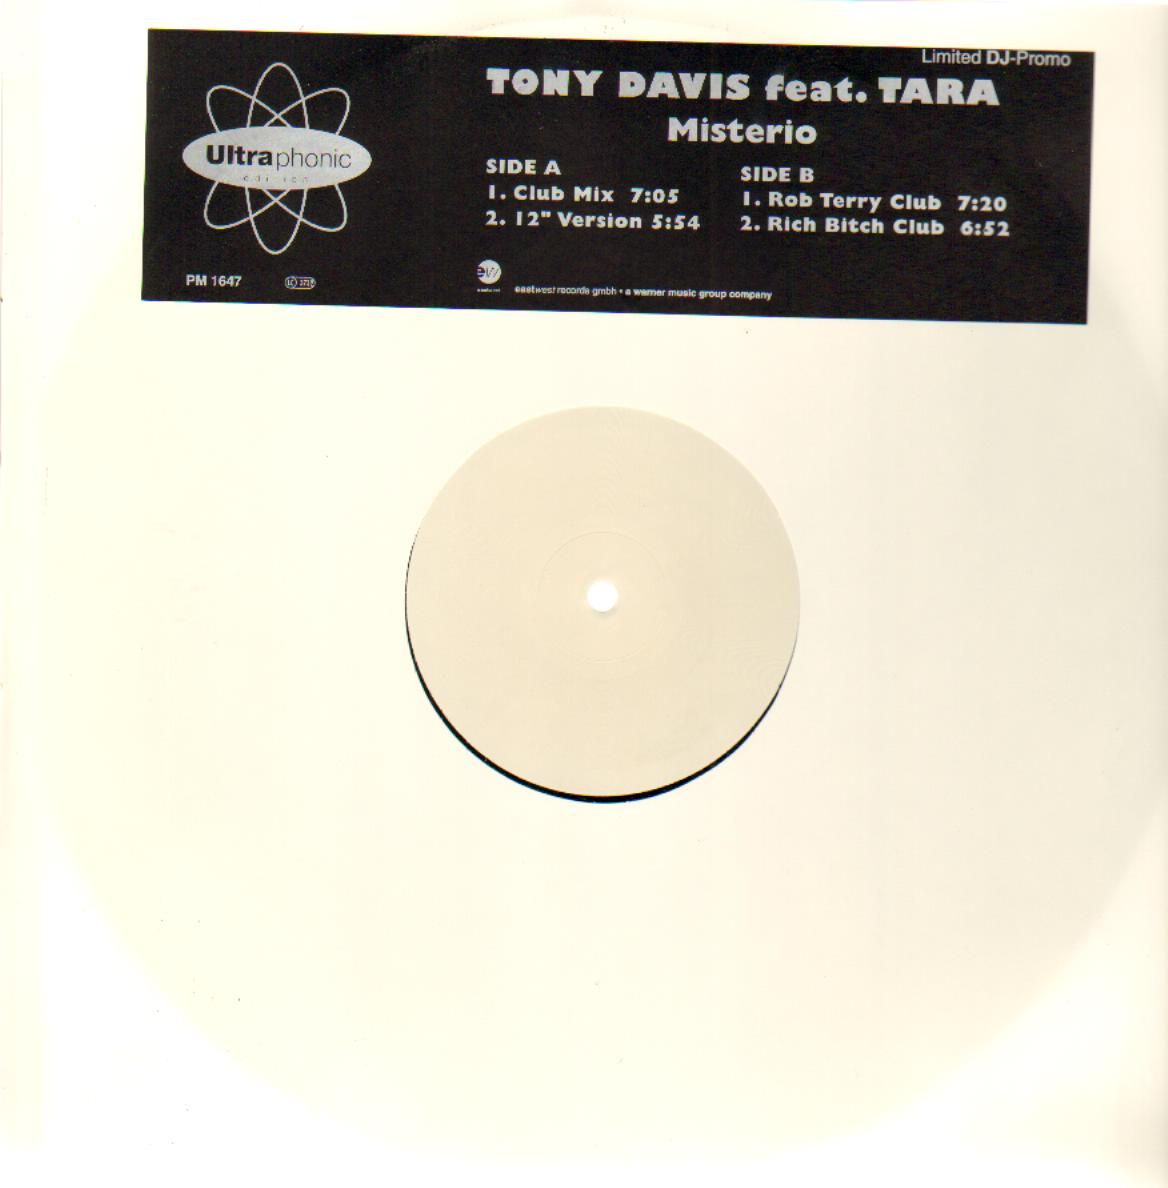 Tony Davis feat. Tara - Misterio Clubmix by RichBitch